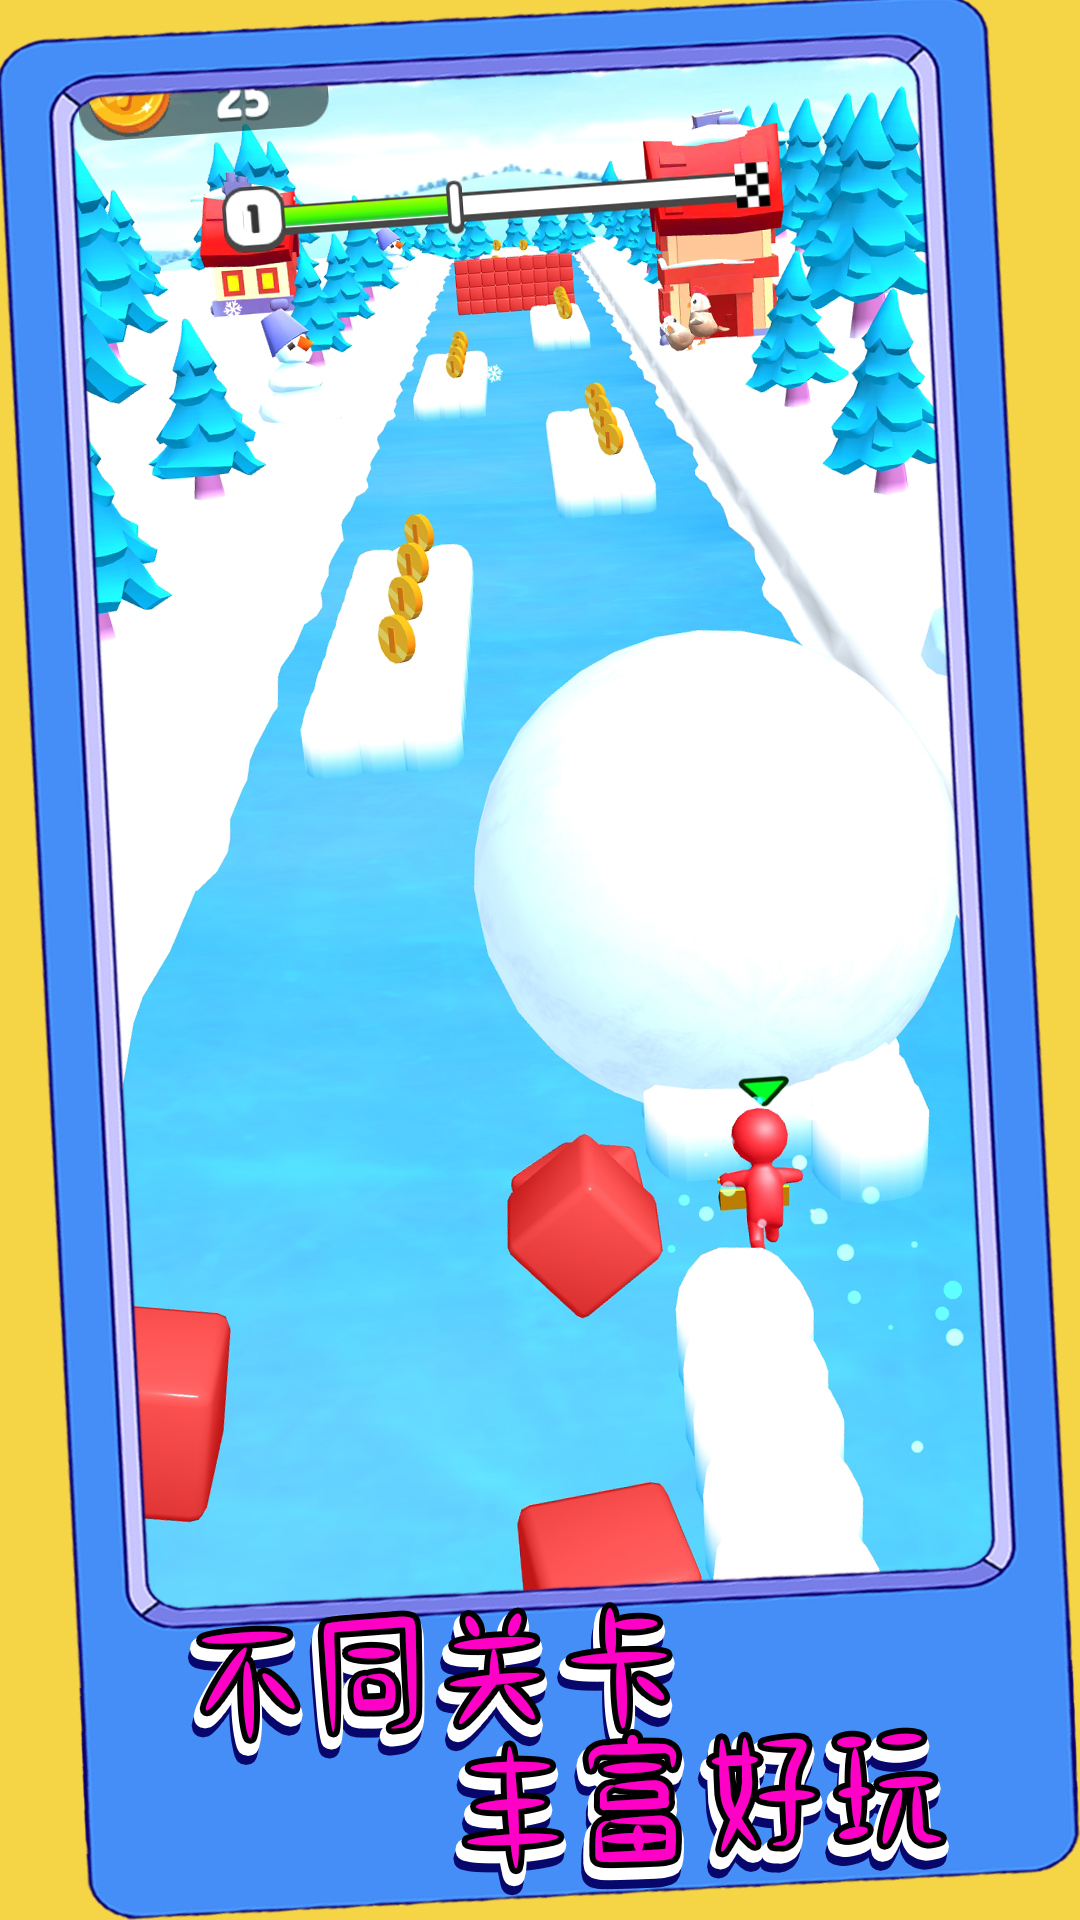 冒险也要闯一闯 v1.0.3-是一款冒险滚雪球跑酷游戏